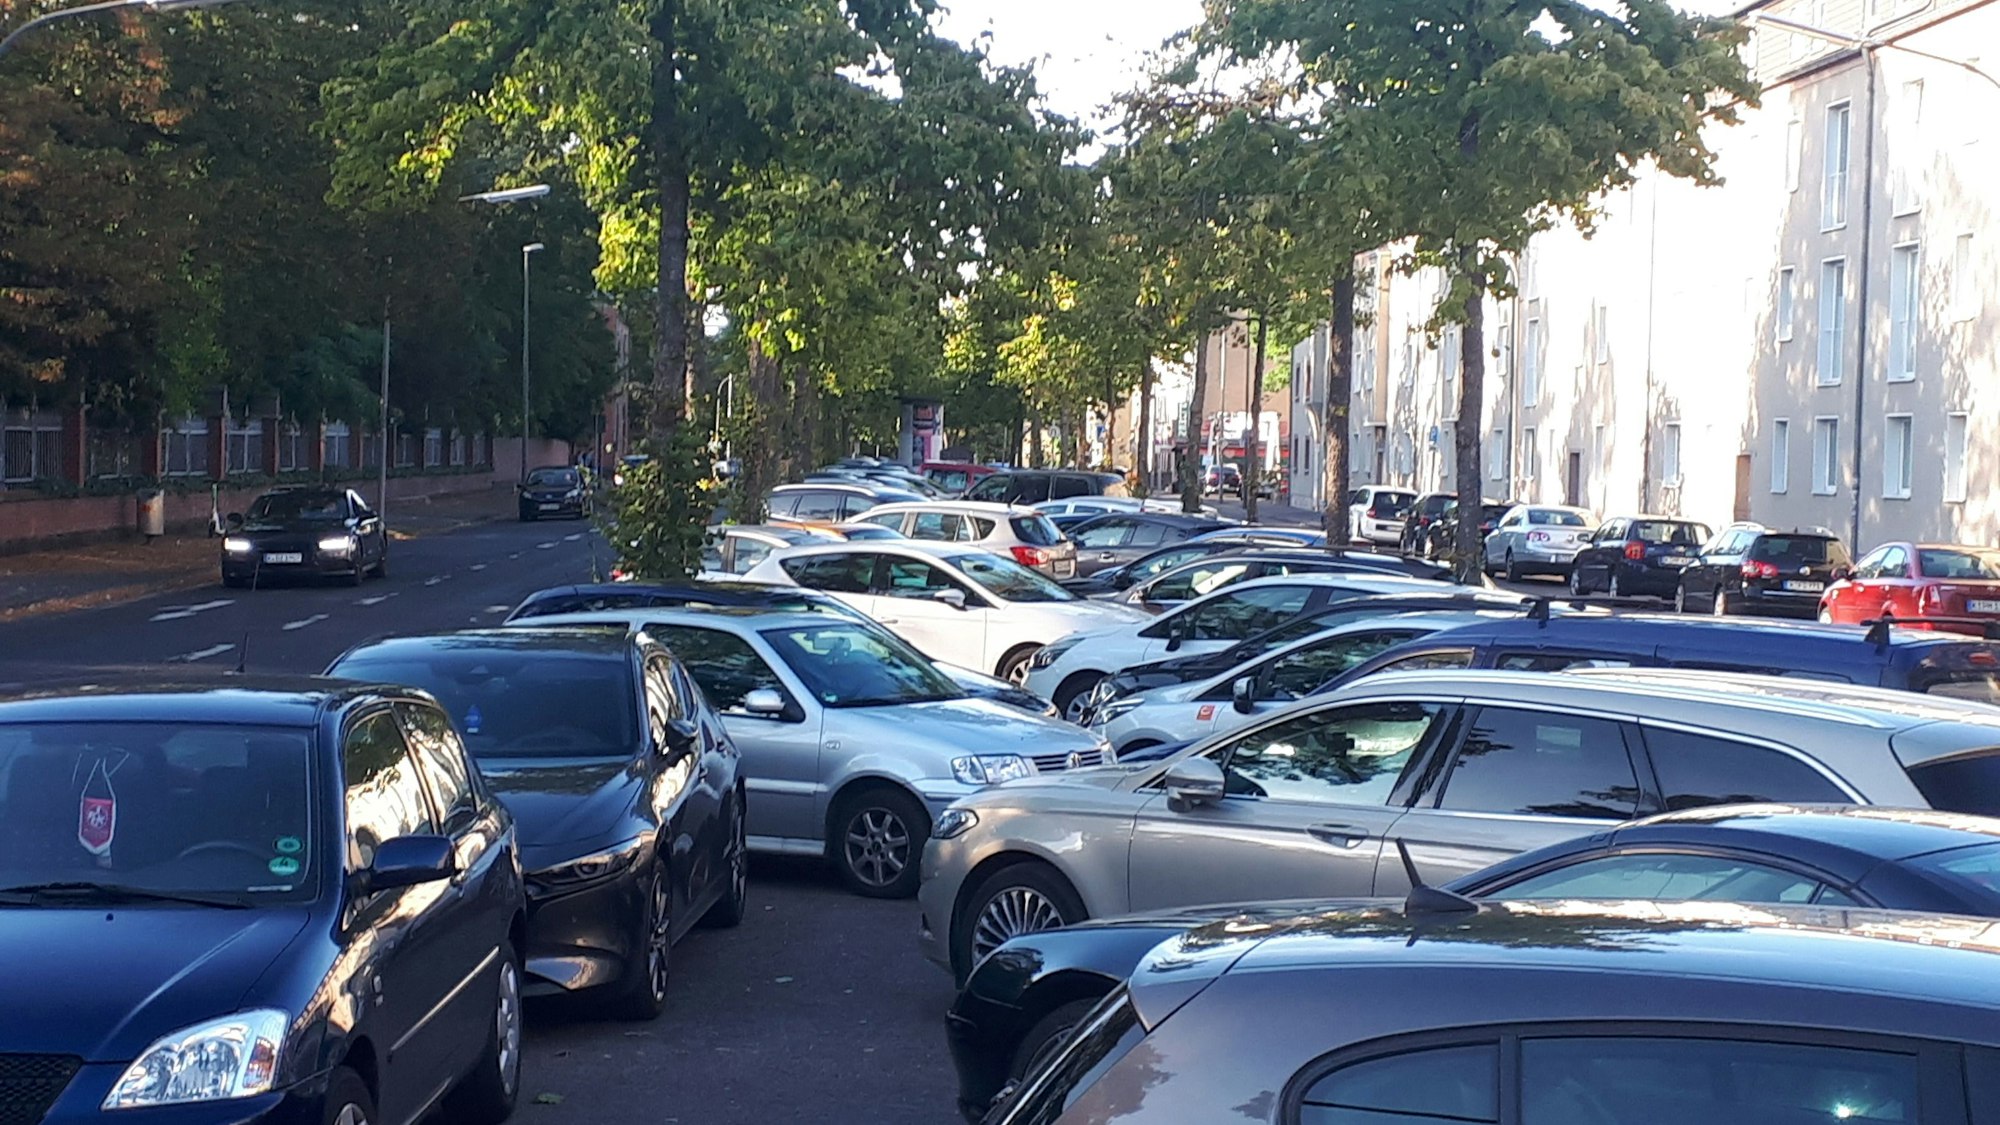 Auf der Mittelallee einer baumbestandenen Straße parken viele Autos.